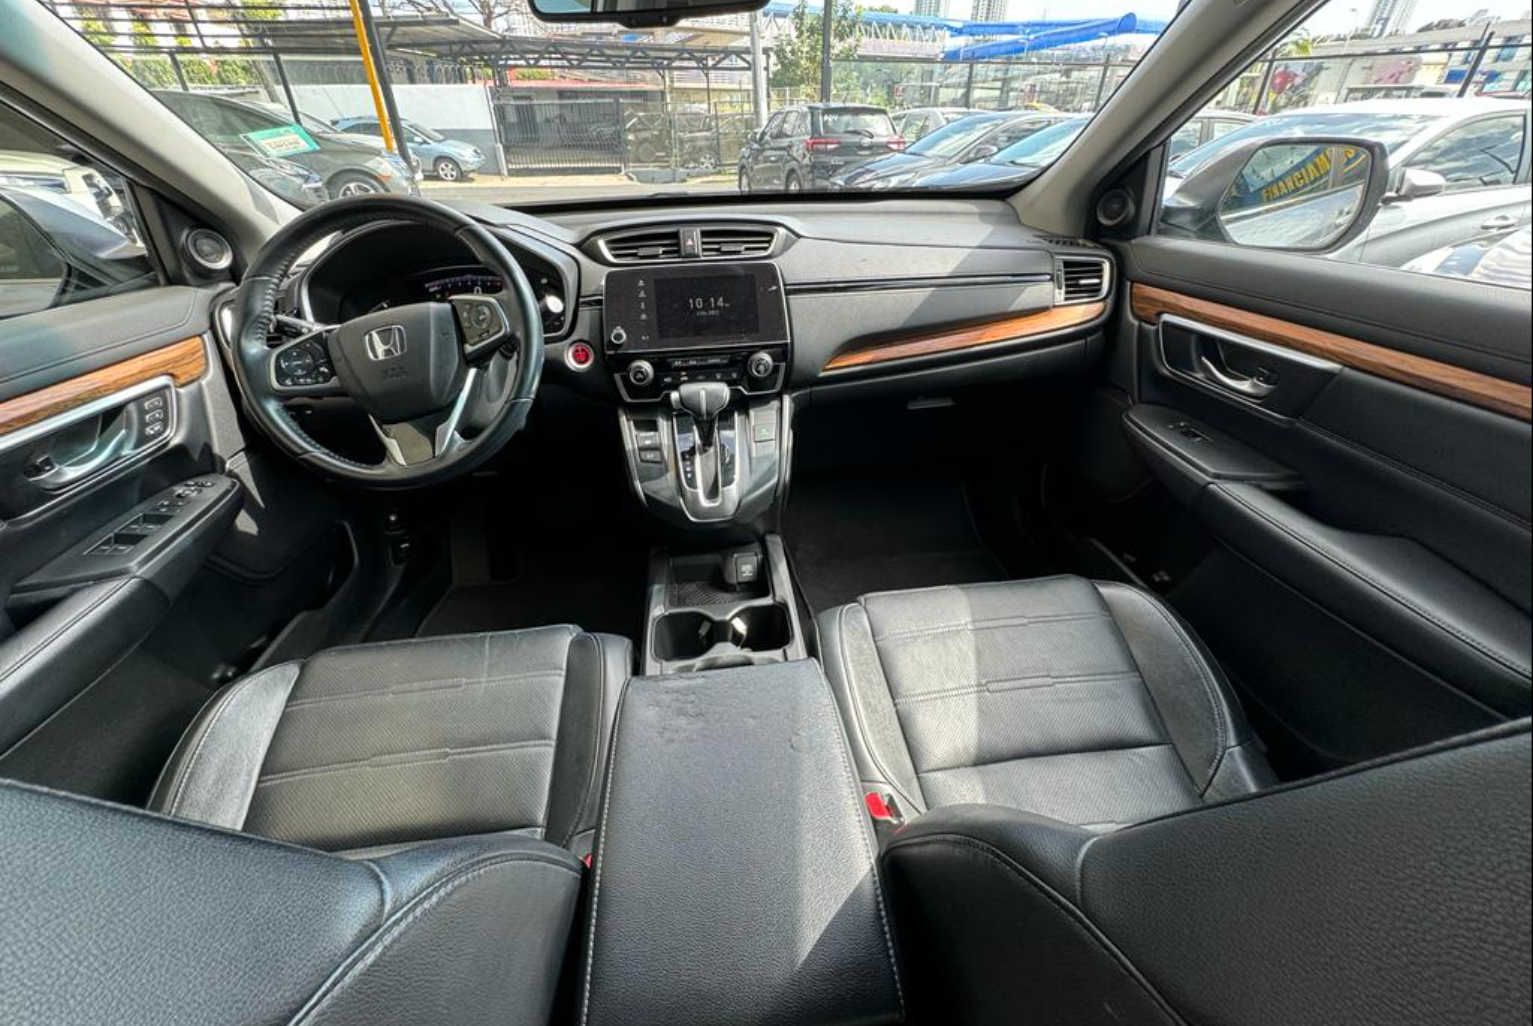 Honda CR-V 2018 Automático color Plateado, Imagen #9